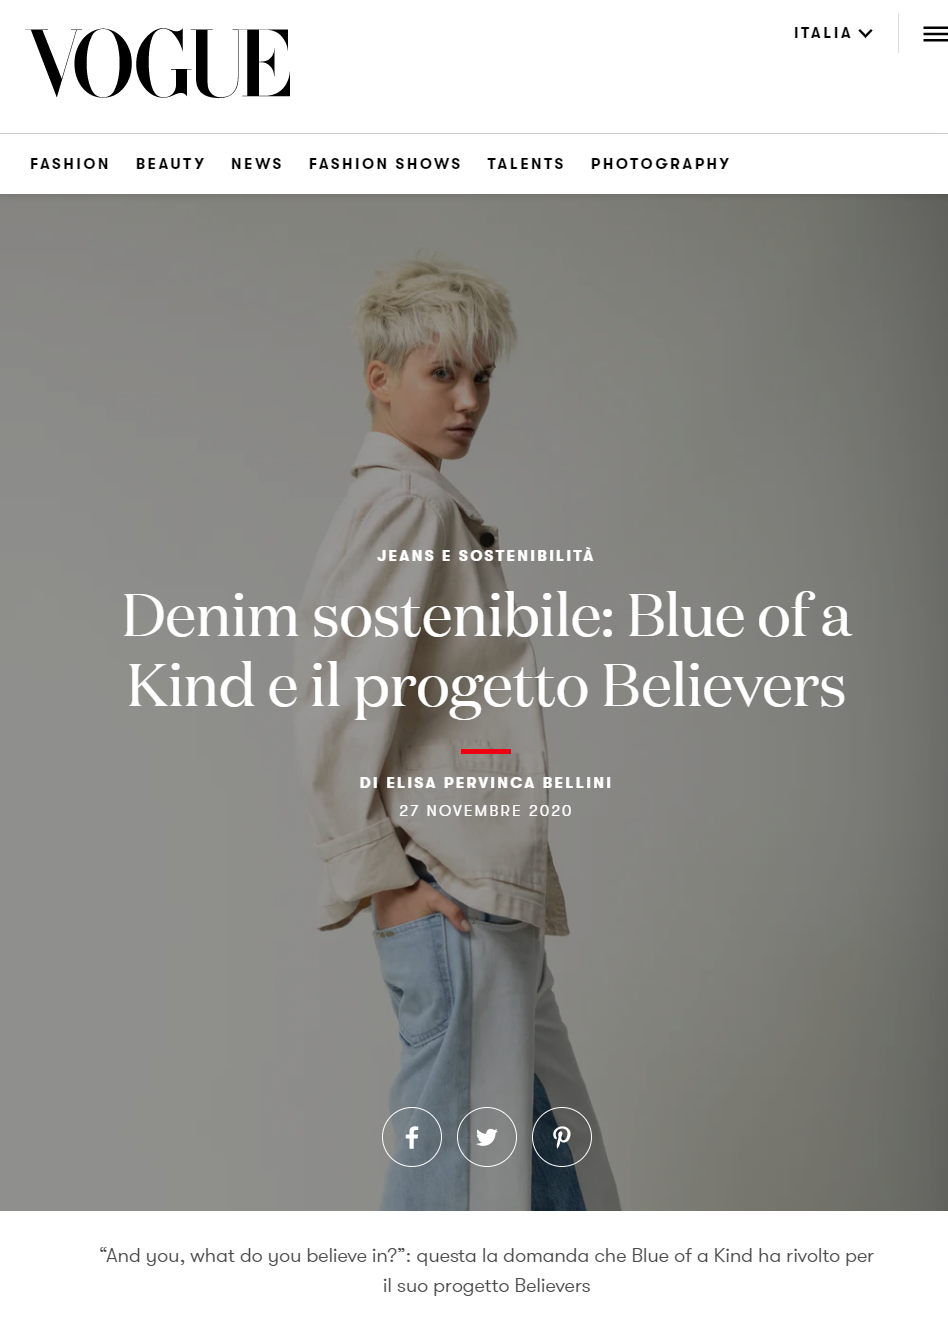 Vogue.it - Denim sostenibile: Blue of a Kind e il progetto believers